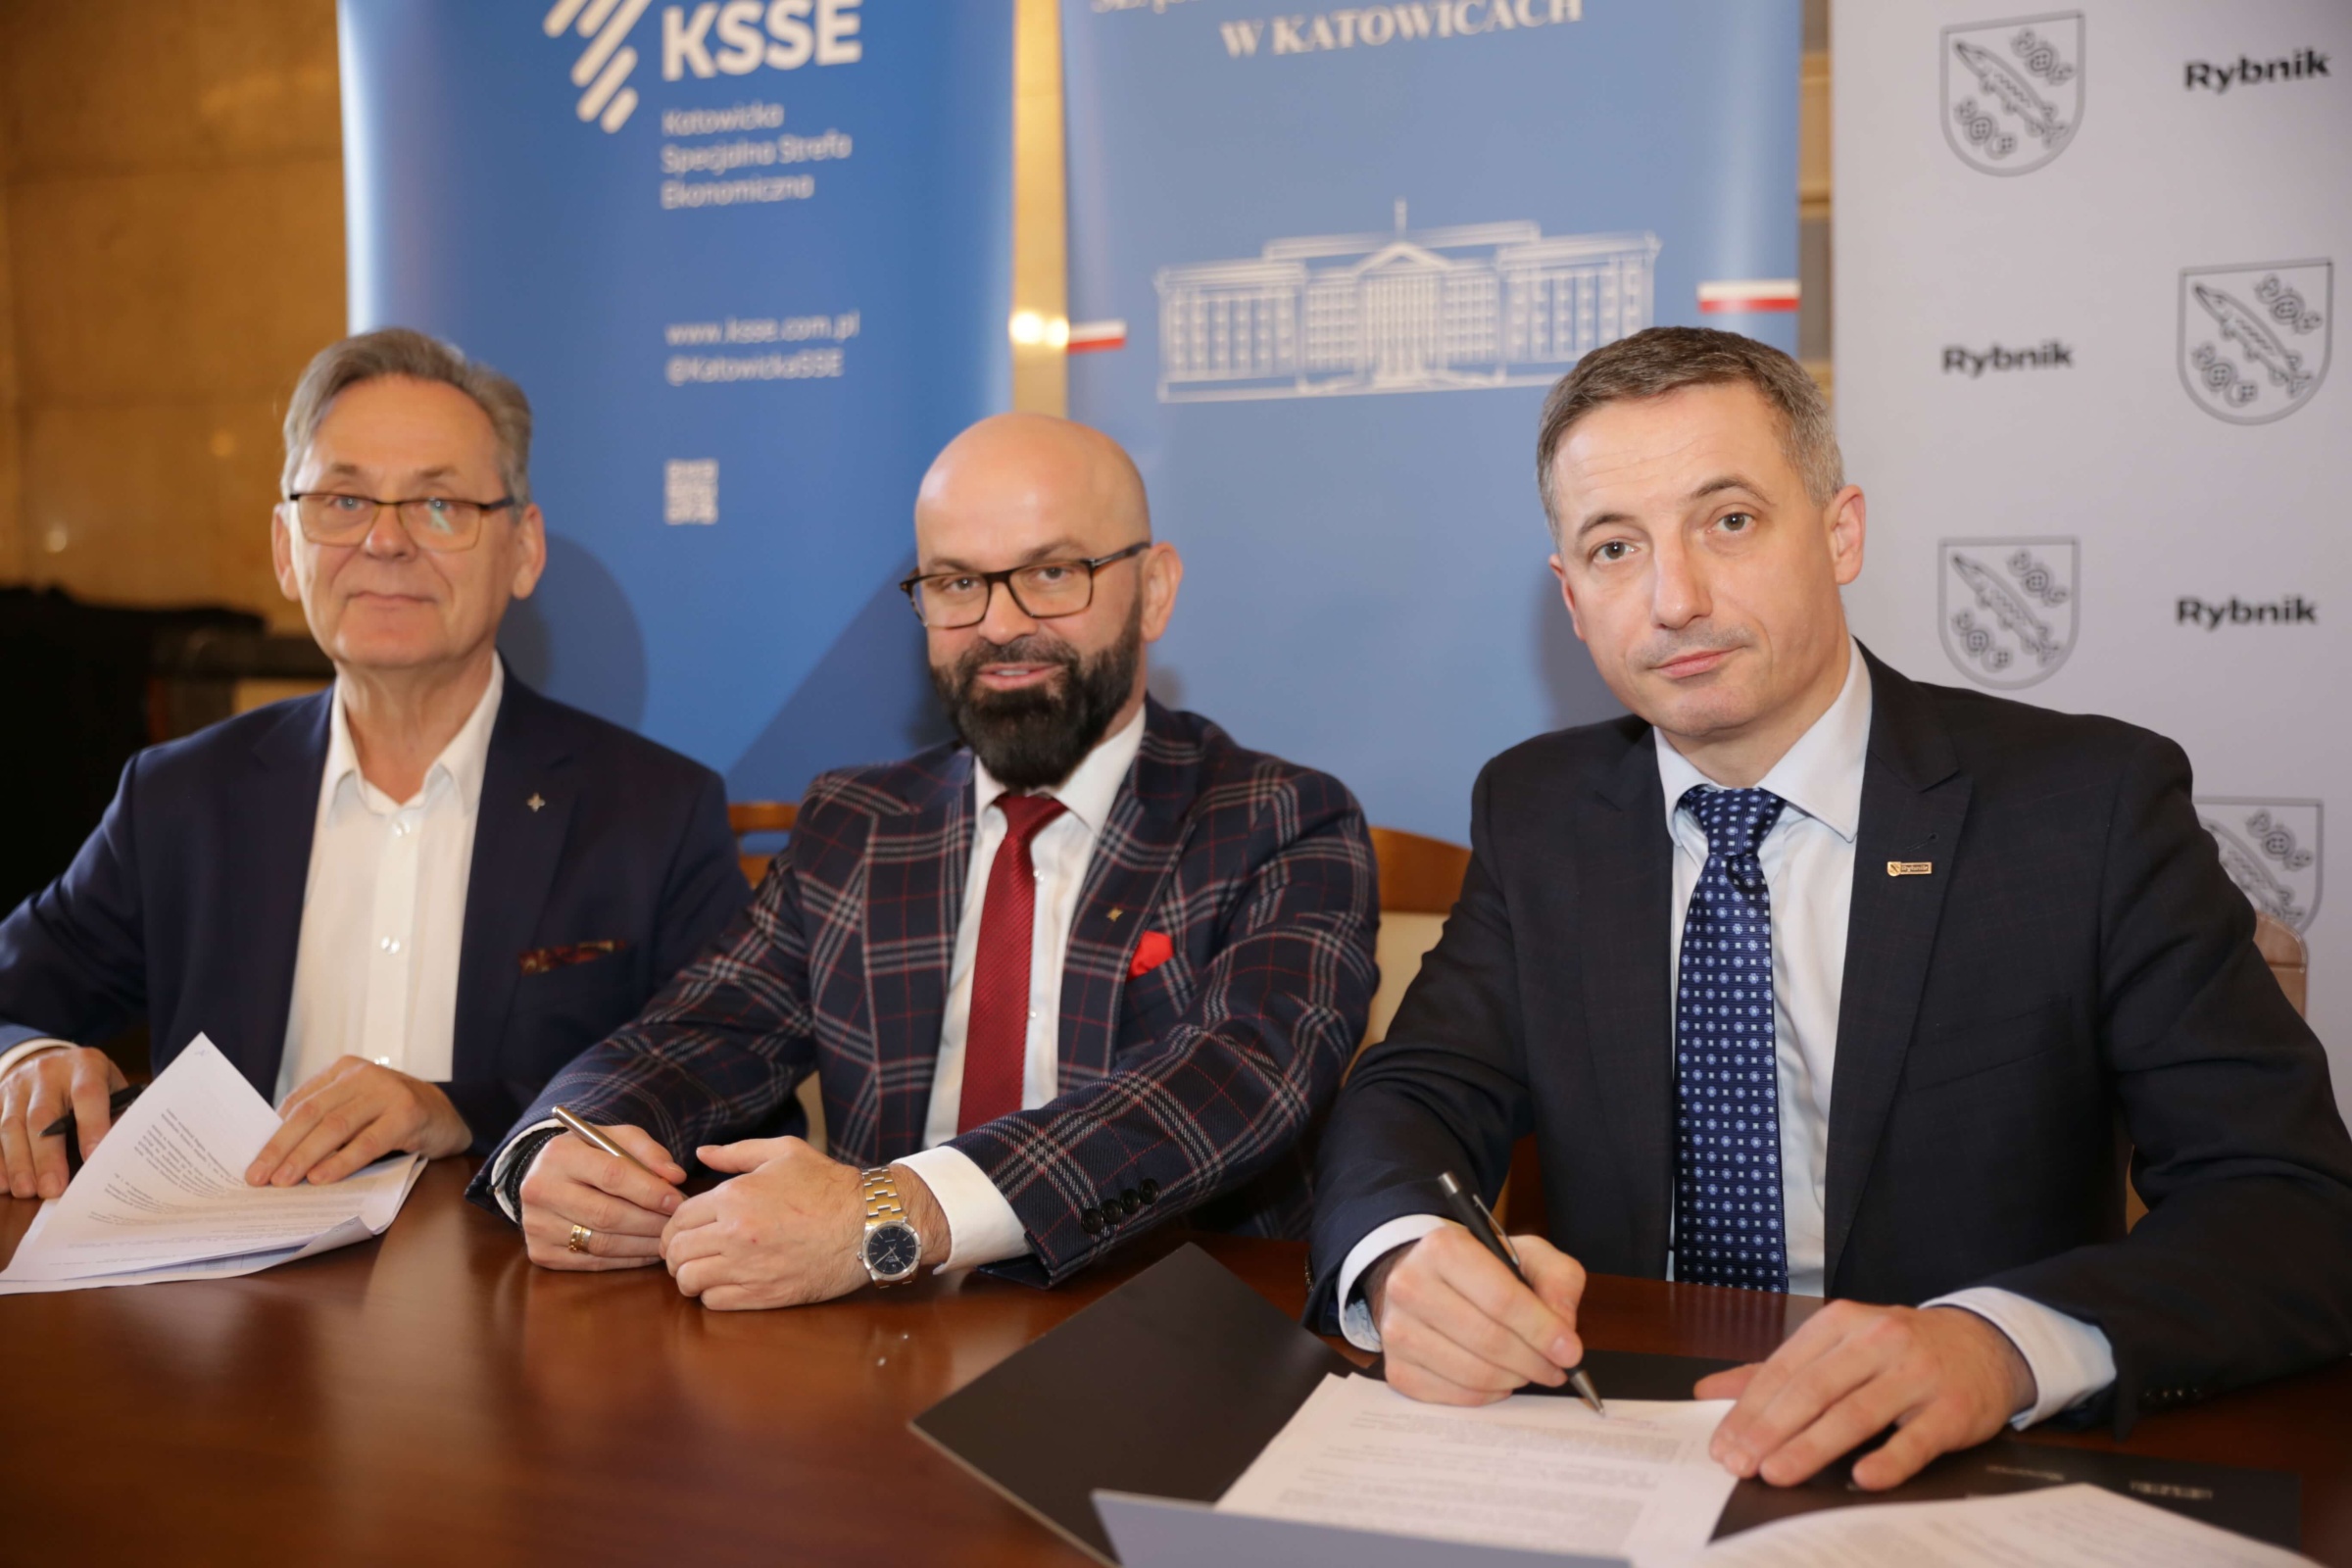 W środę 14 lutego w Śląskim Urzędzie Wojewódzkim doszło do podpisania umowy o współpracy pomiędzy Miastem Rybnik, a KSSE. Zdj. Wacław Troszka